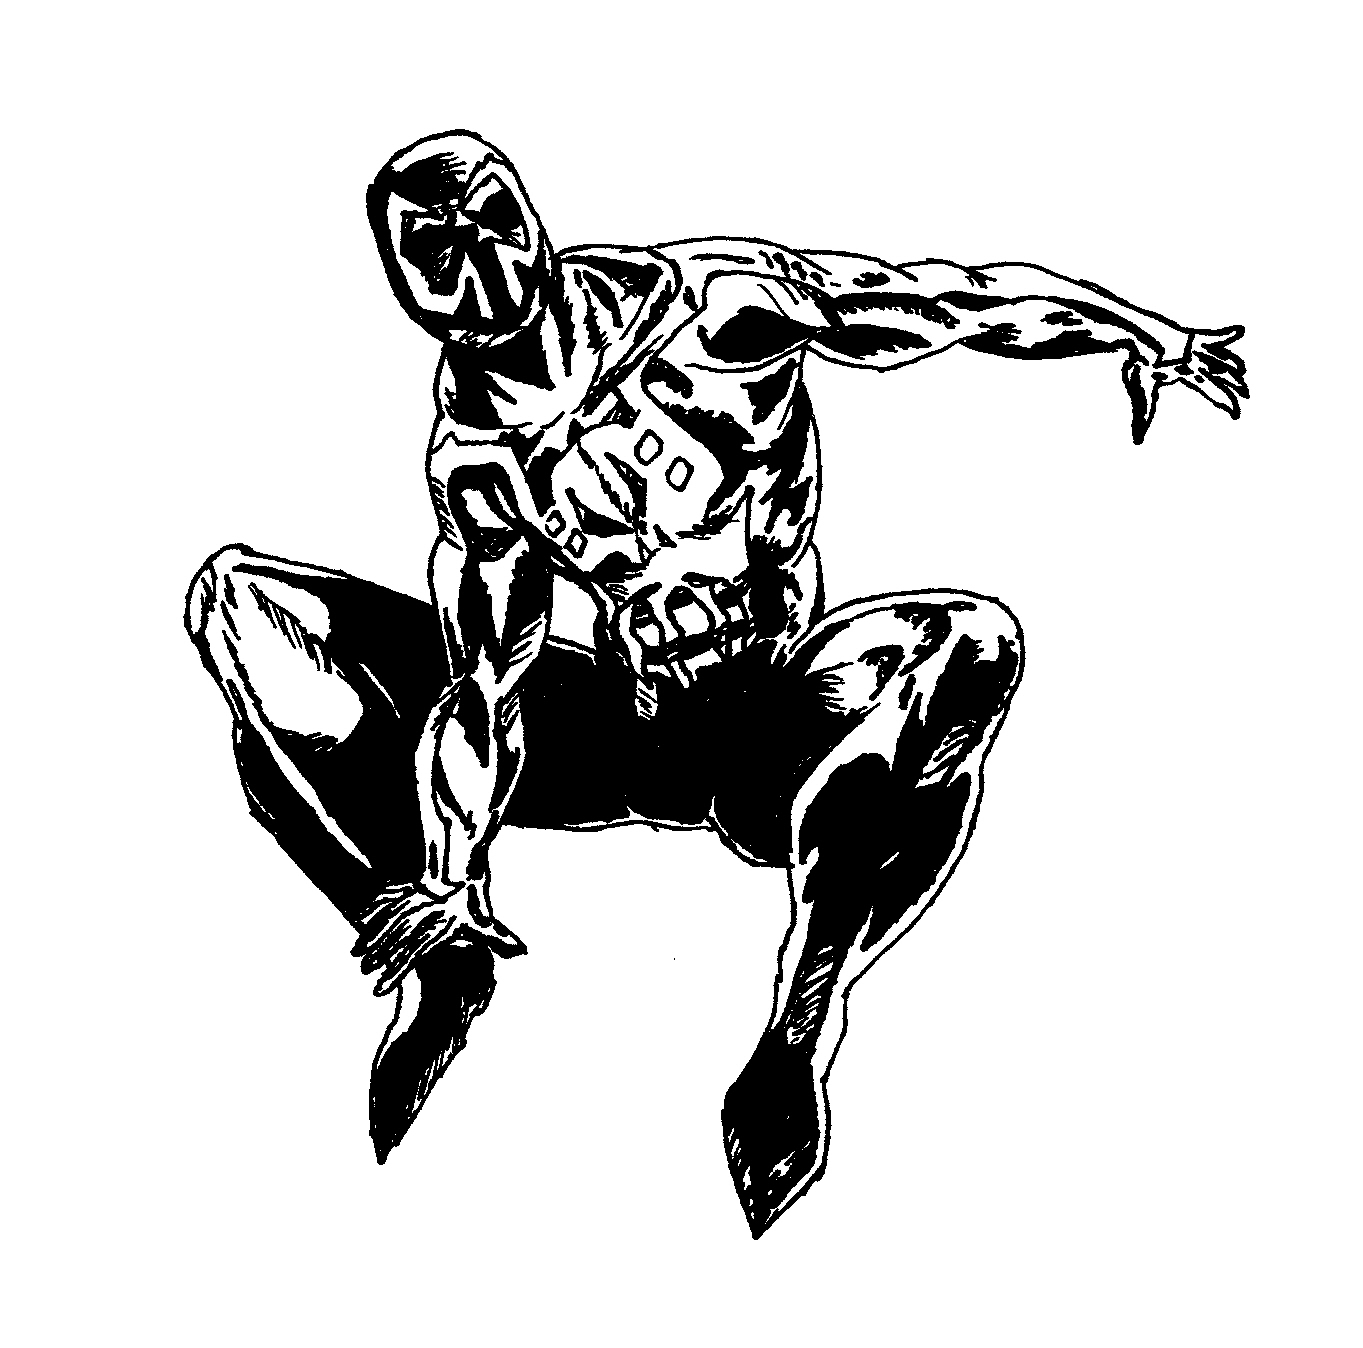 Spider-man 2099 ink by flamedemon